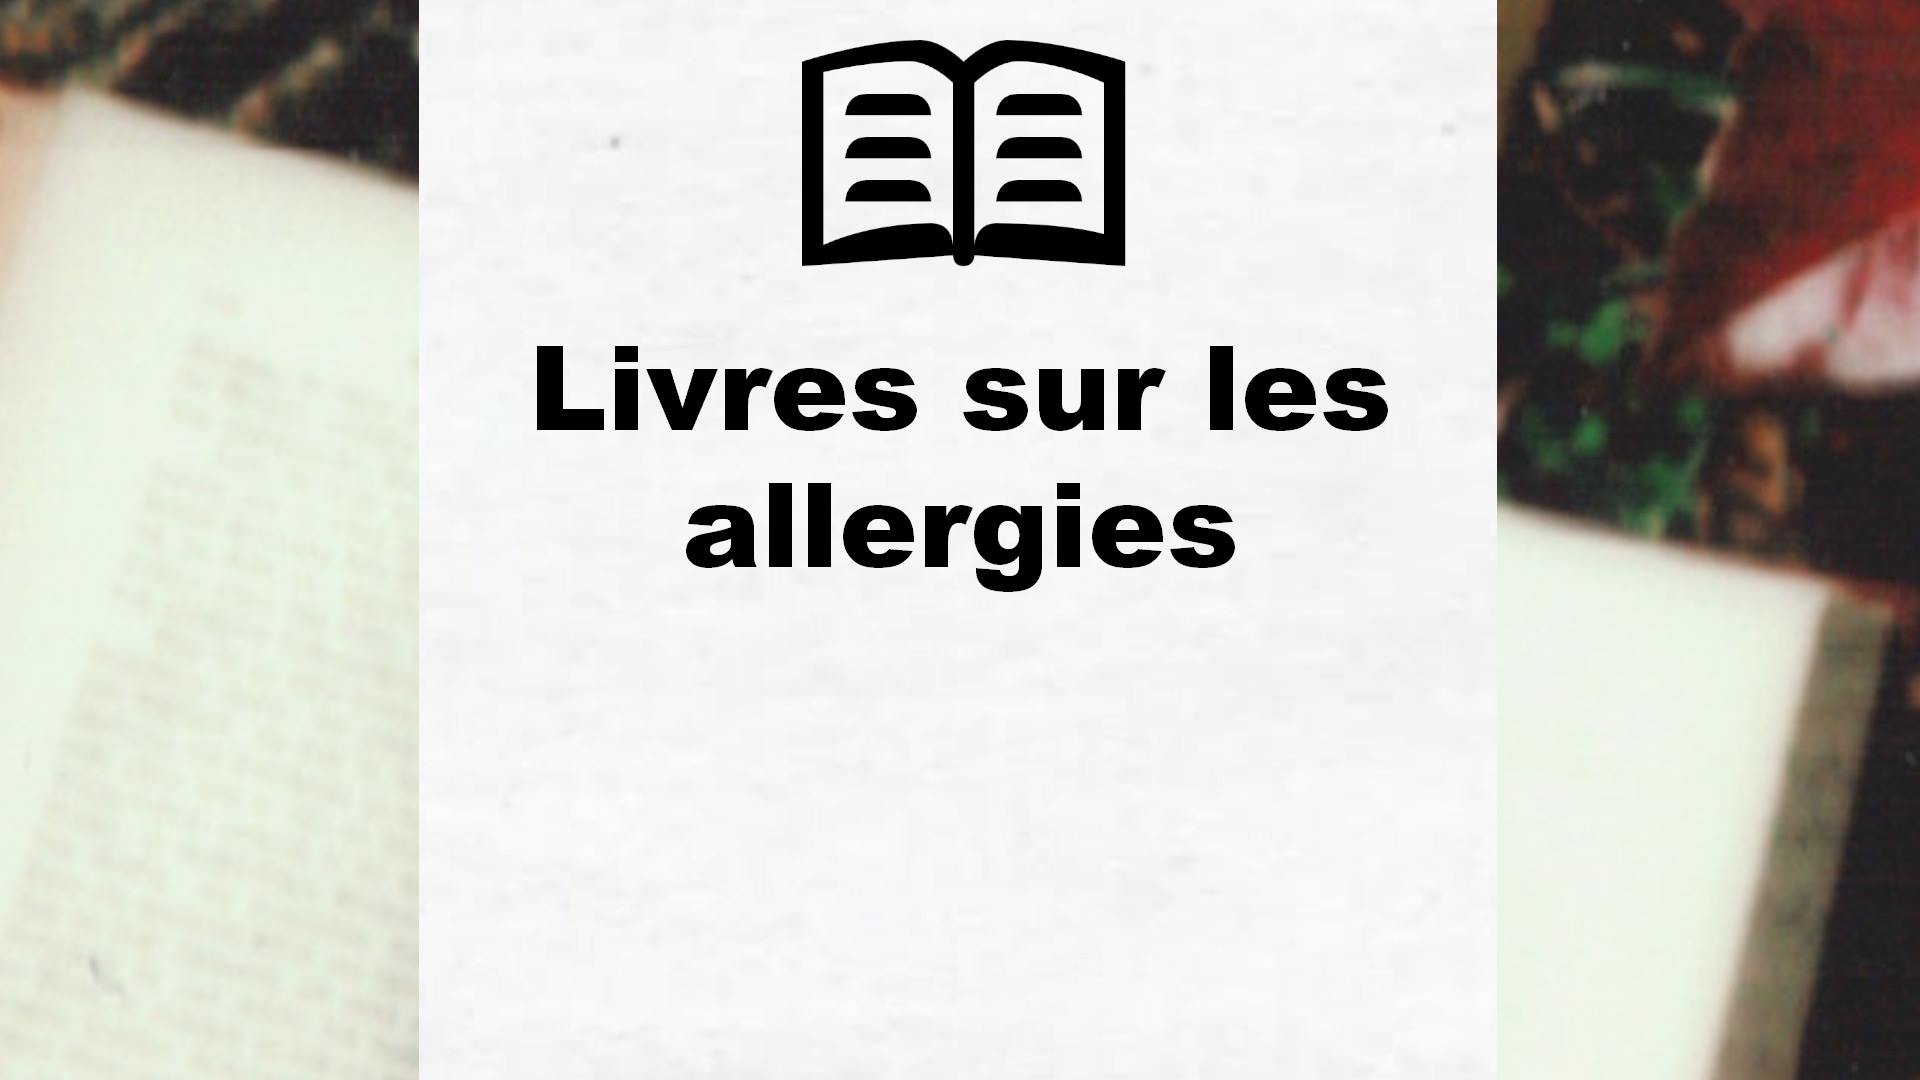 Livres sur les allergies